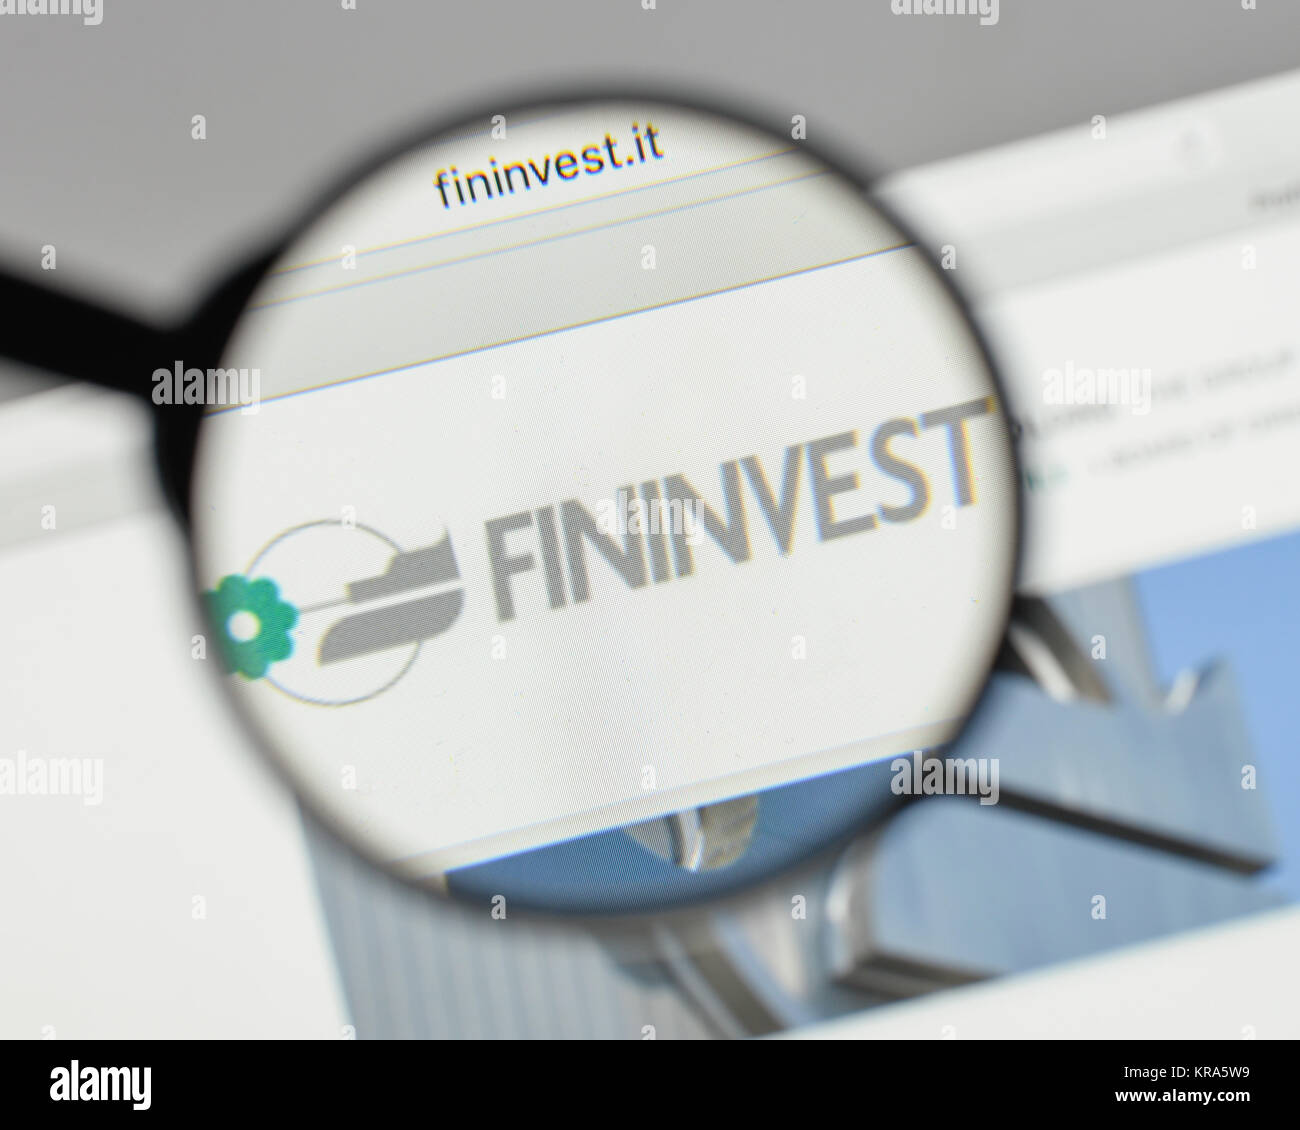 Milano, Italia - 10 agosto 2017: Fininvest logo sulla homepage del sito web. Foto Stock